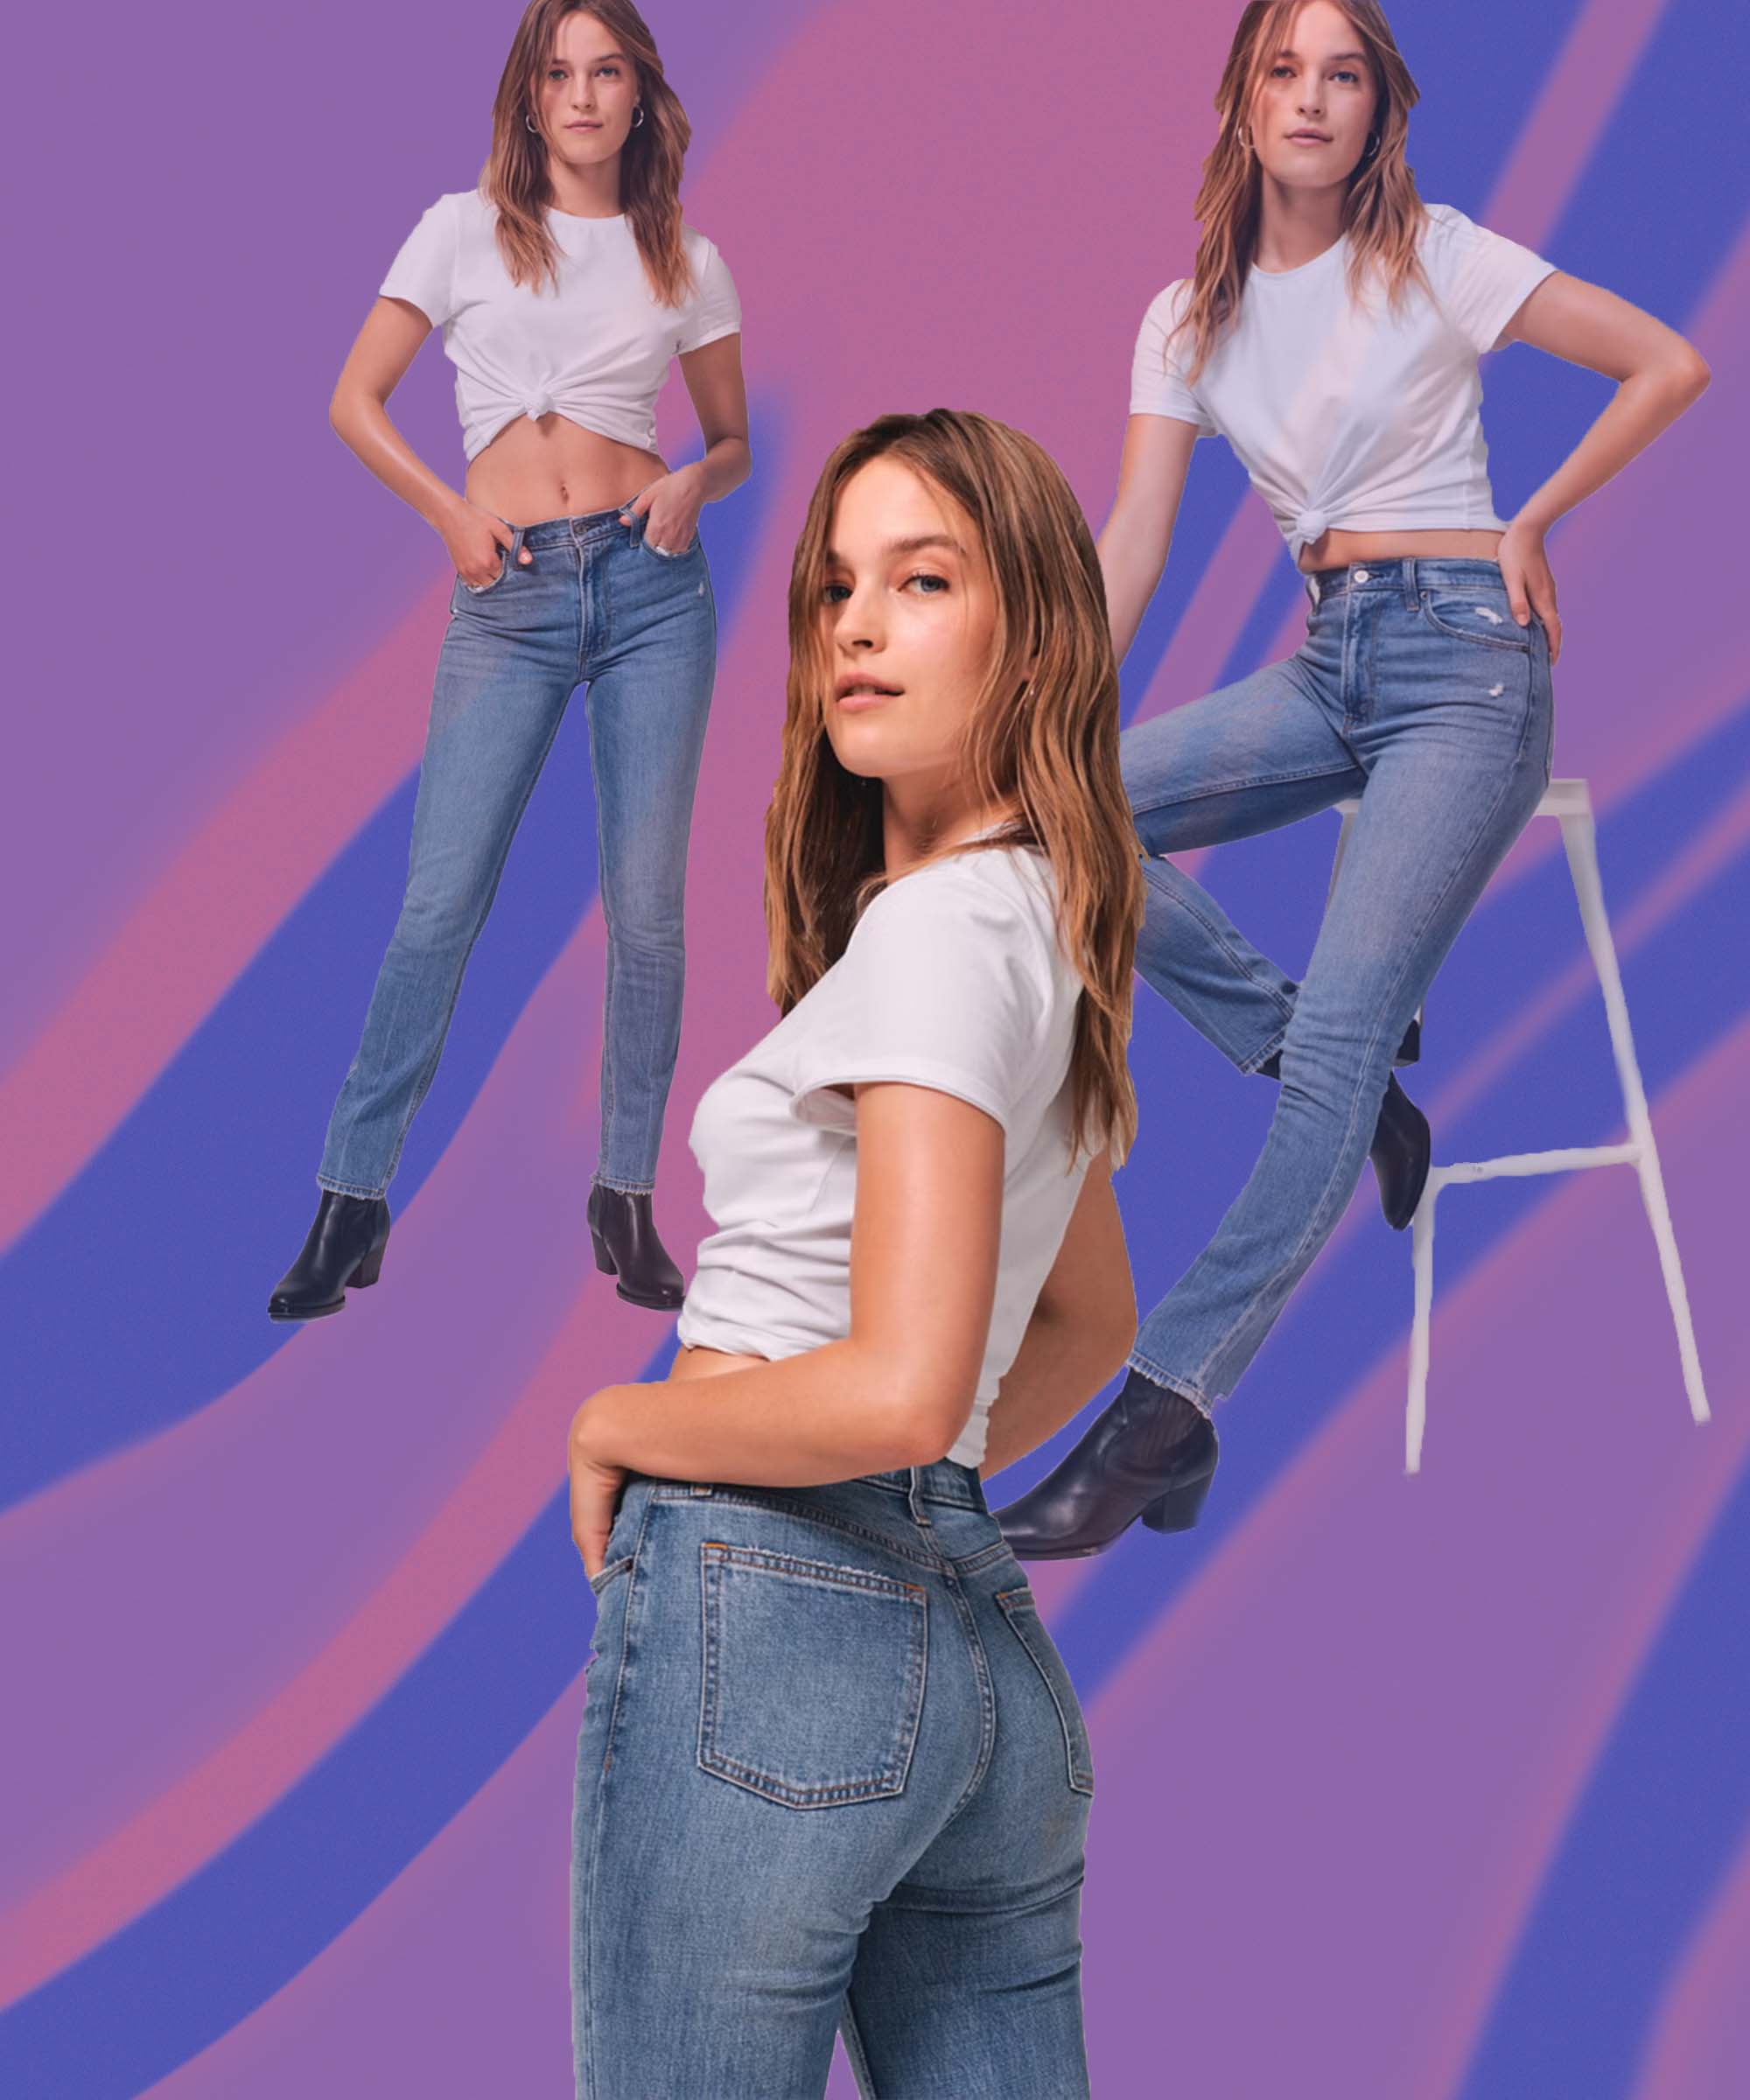 Petite Inseam Jeans